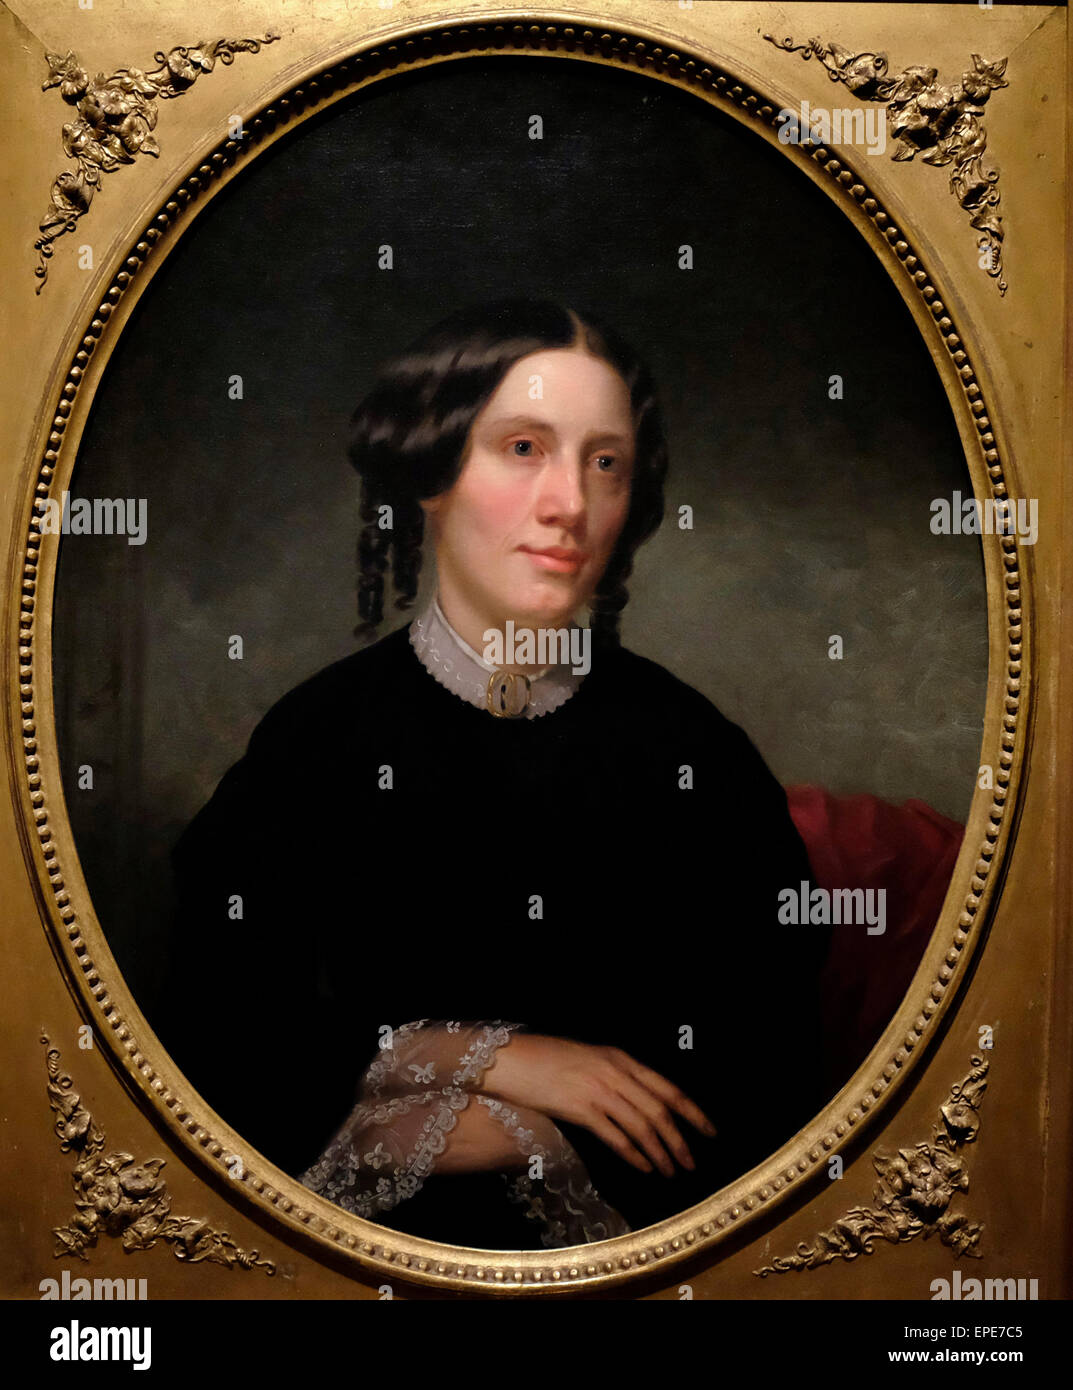 Harriet Beecher Stowe, Autor von Onkel Toms Hütte, 1853 Stockfotografie -  Alamy